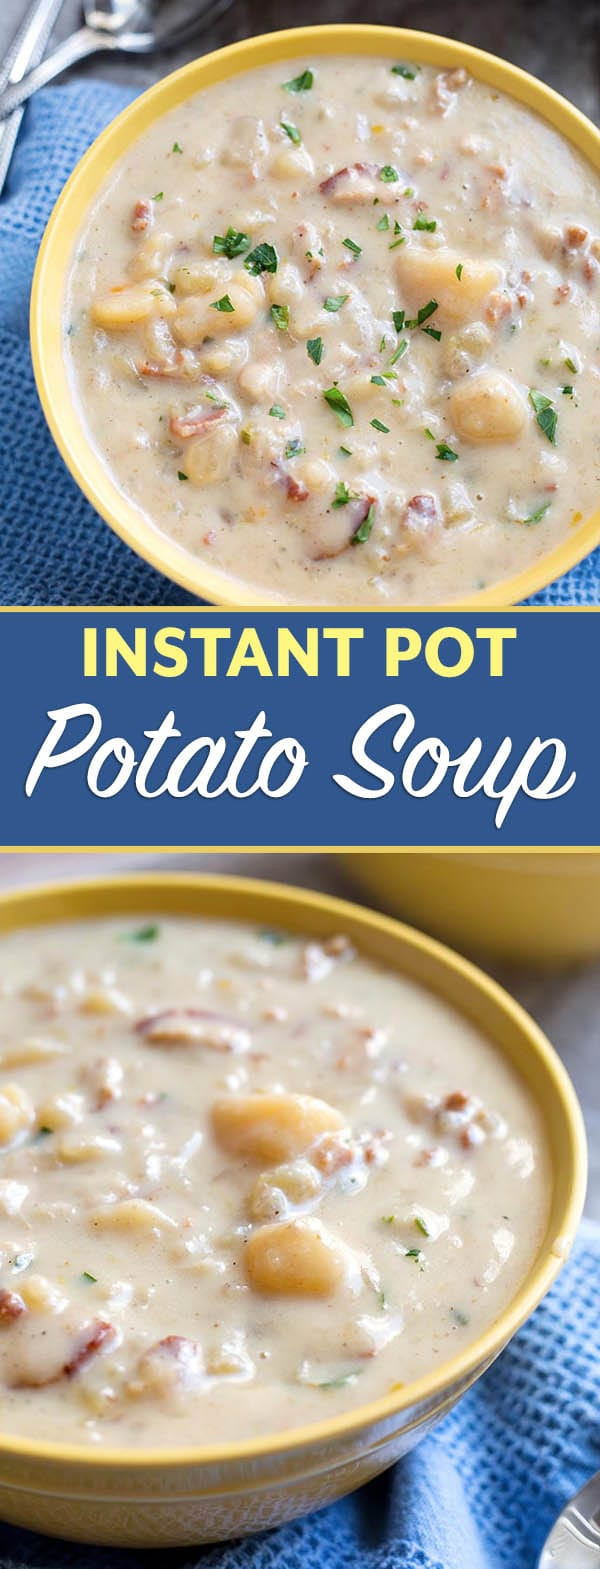 Potato Soup With Instant Potatoes
 Instant Pot Simple Potato Soup